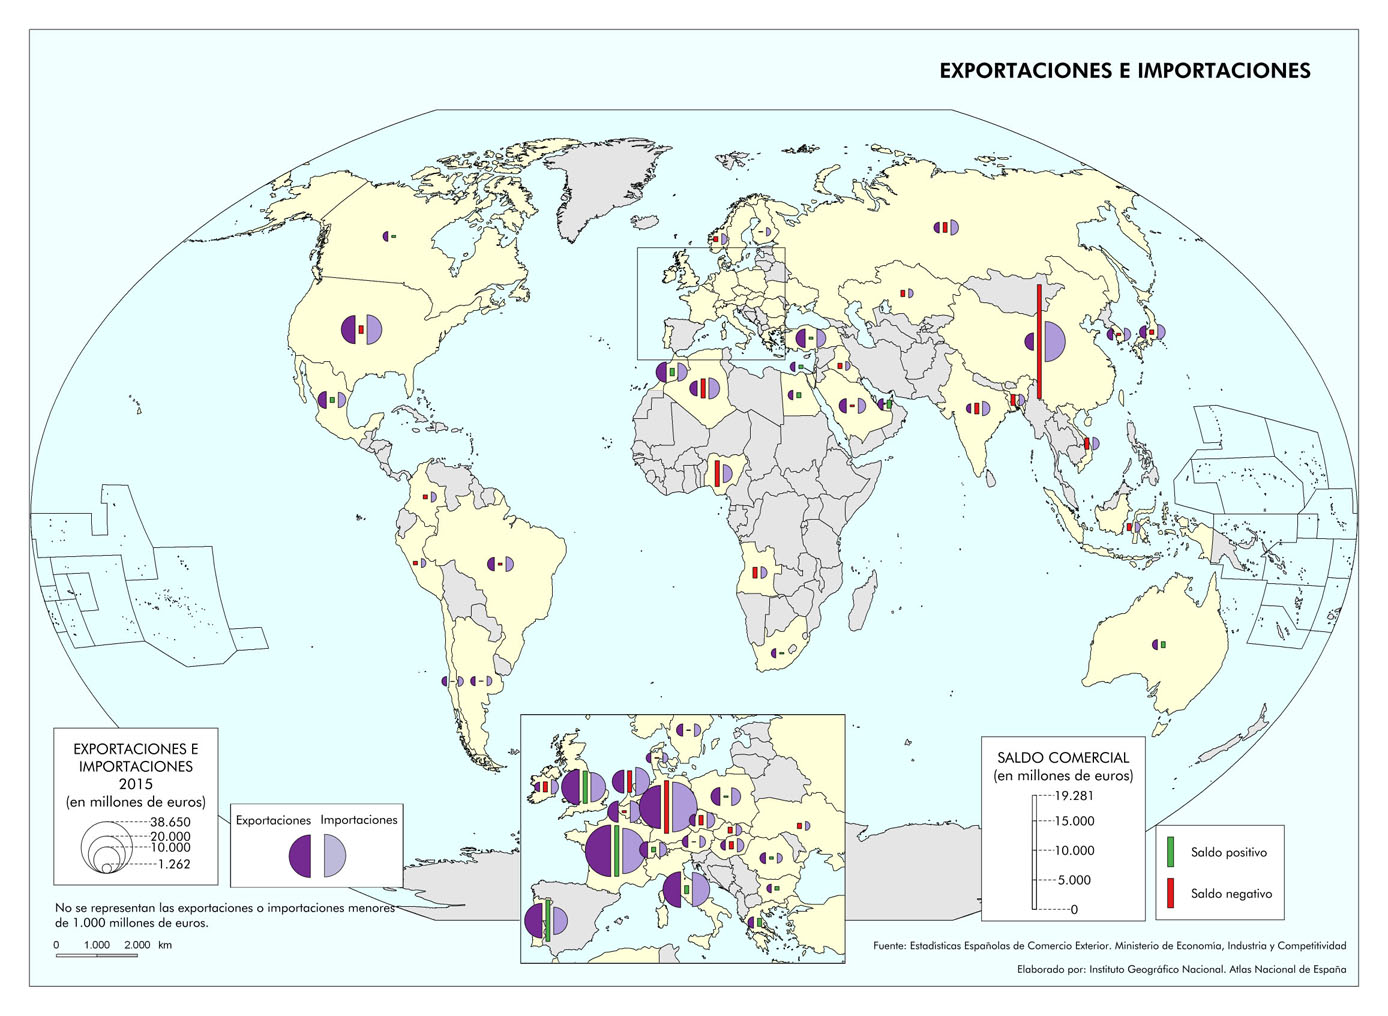 Imagen del mapa de exportaciones e importaciones en el mundo. 2015